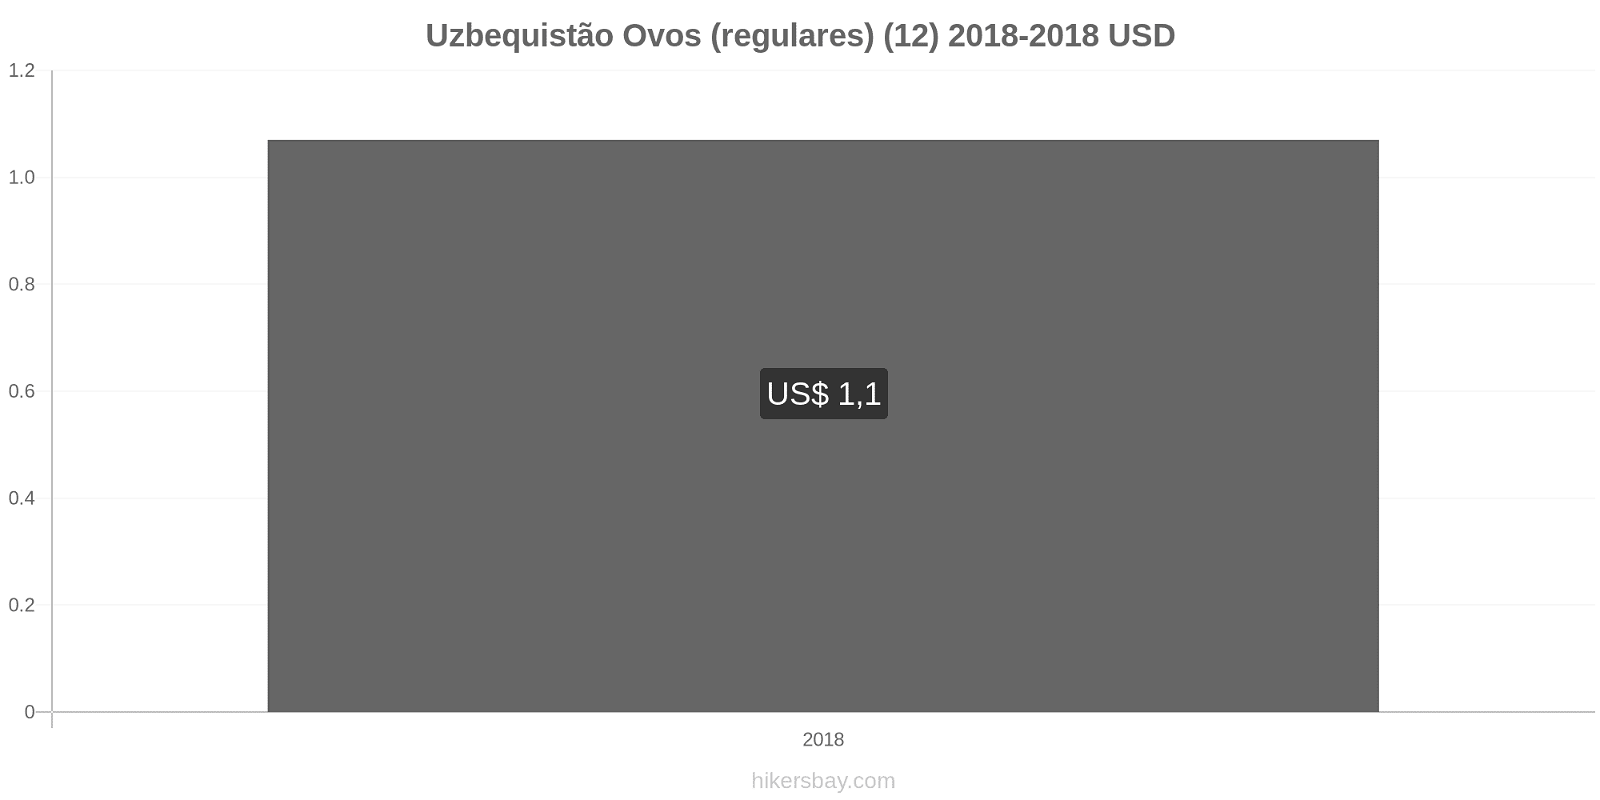 Uzbequistão mudanças de preços Ovos (normais) (12 unidades) hikersbay.com